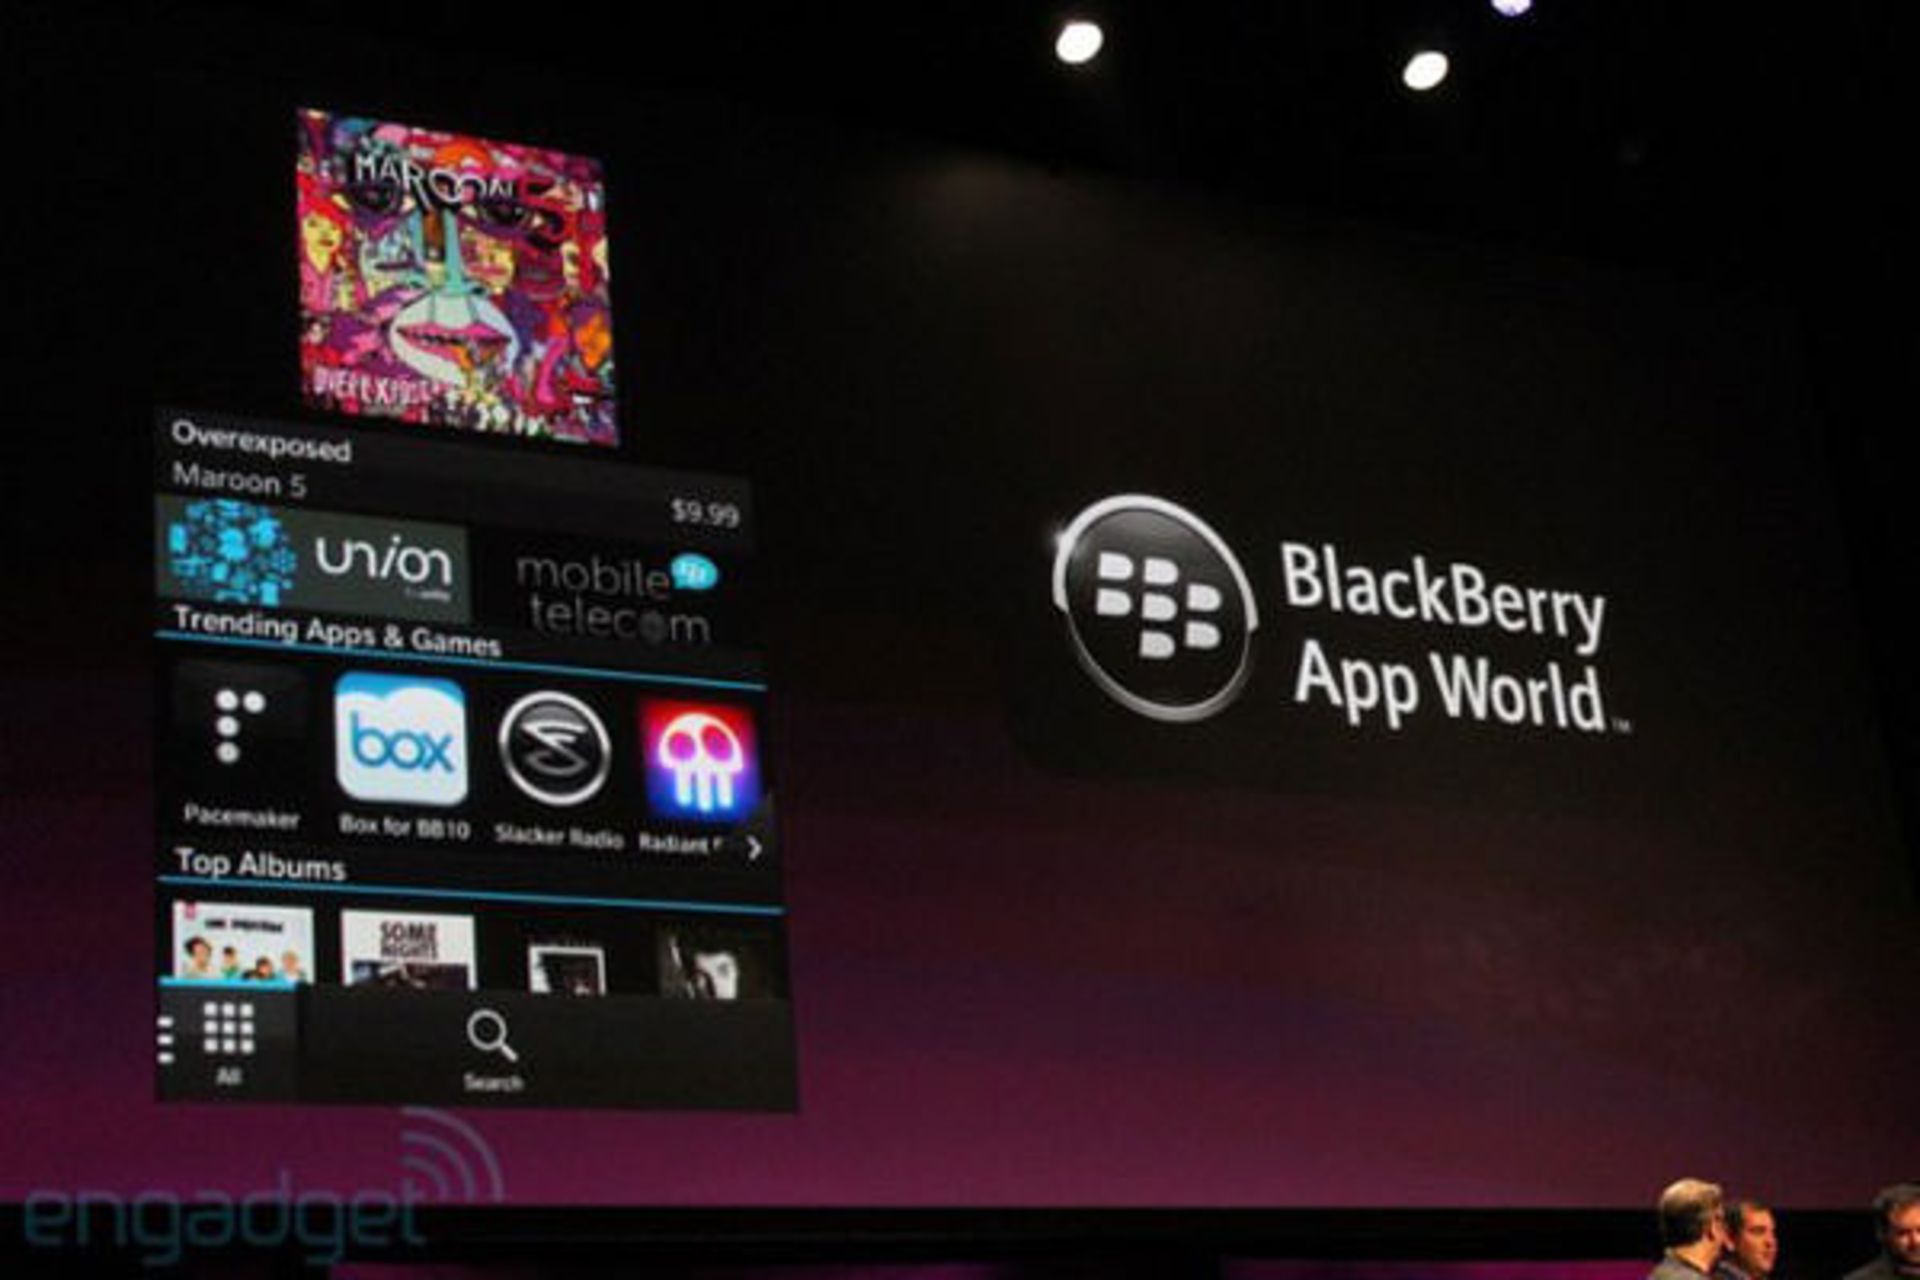 Blackberry app world